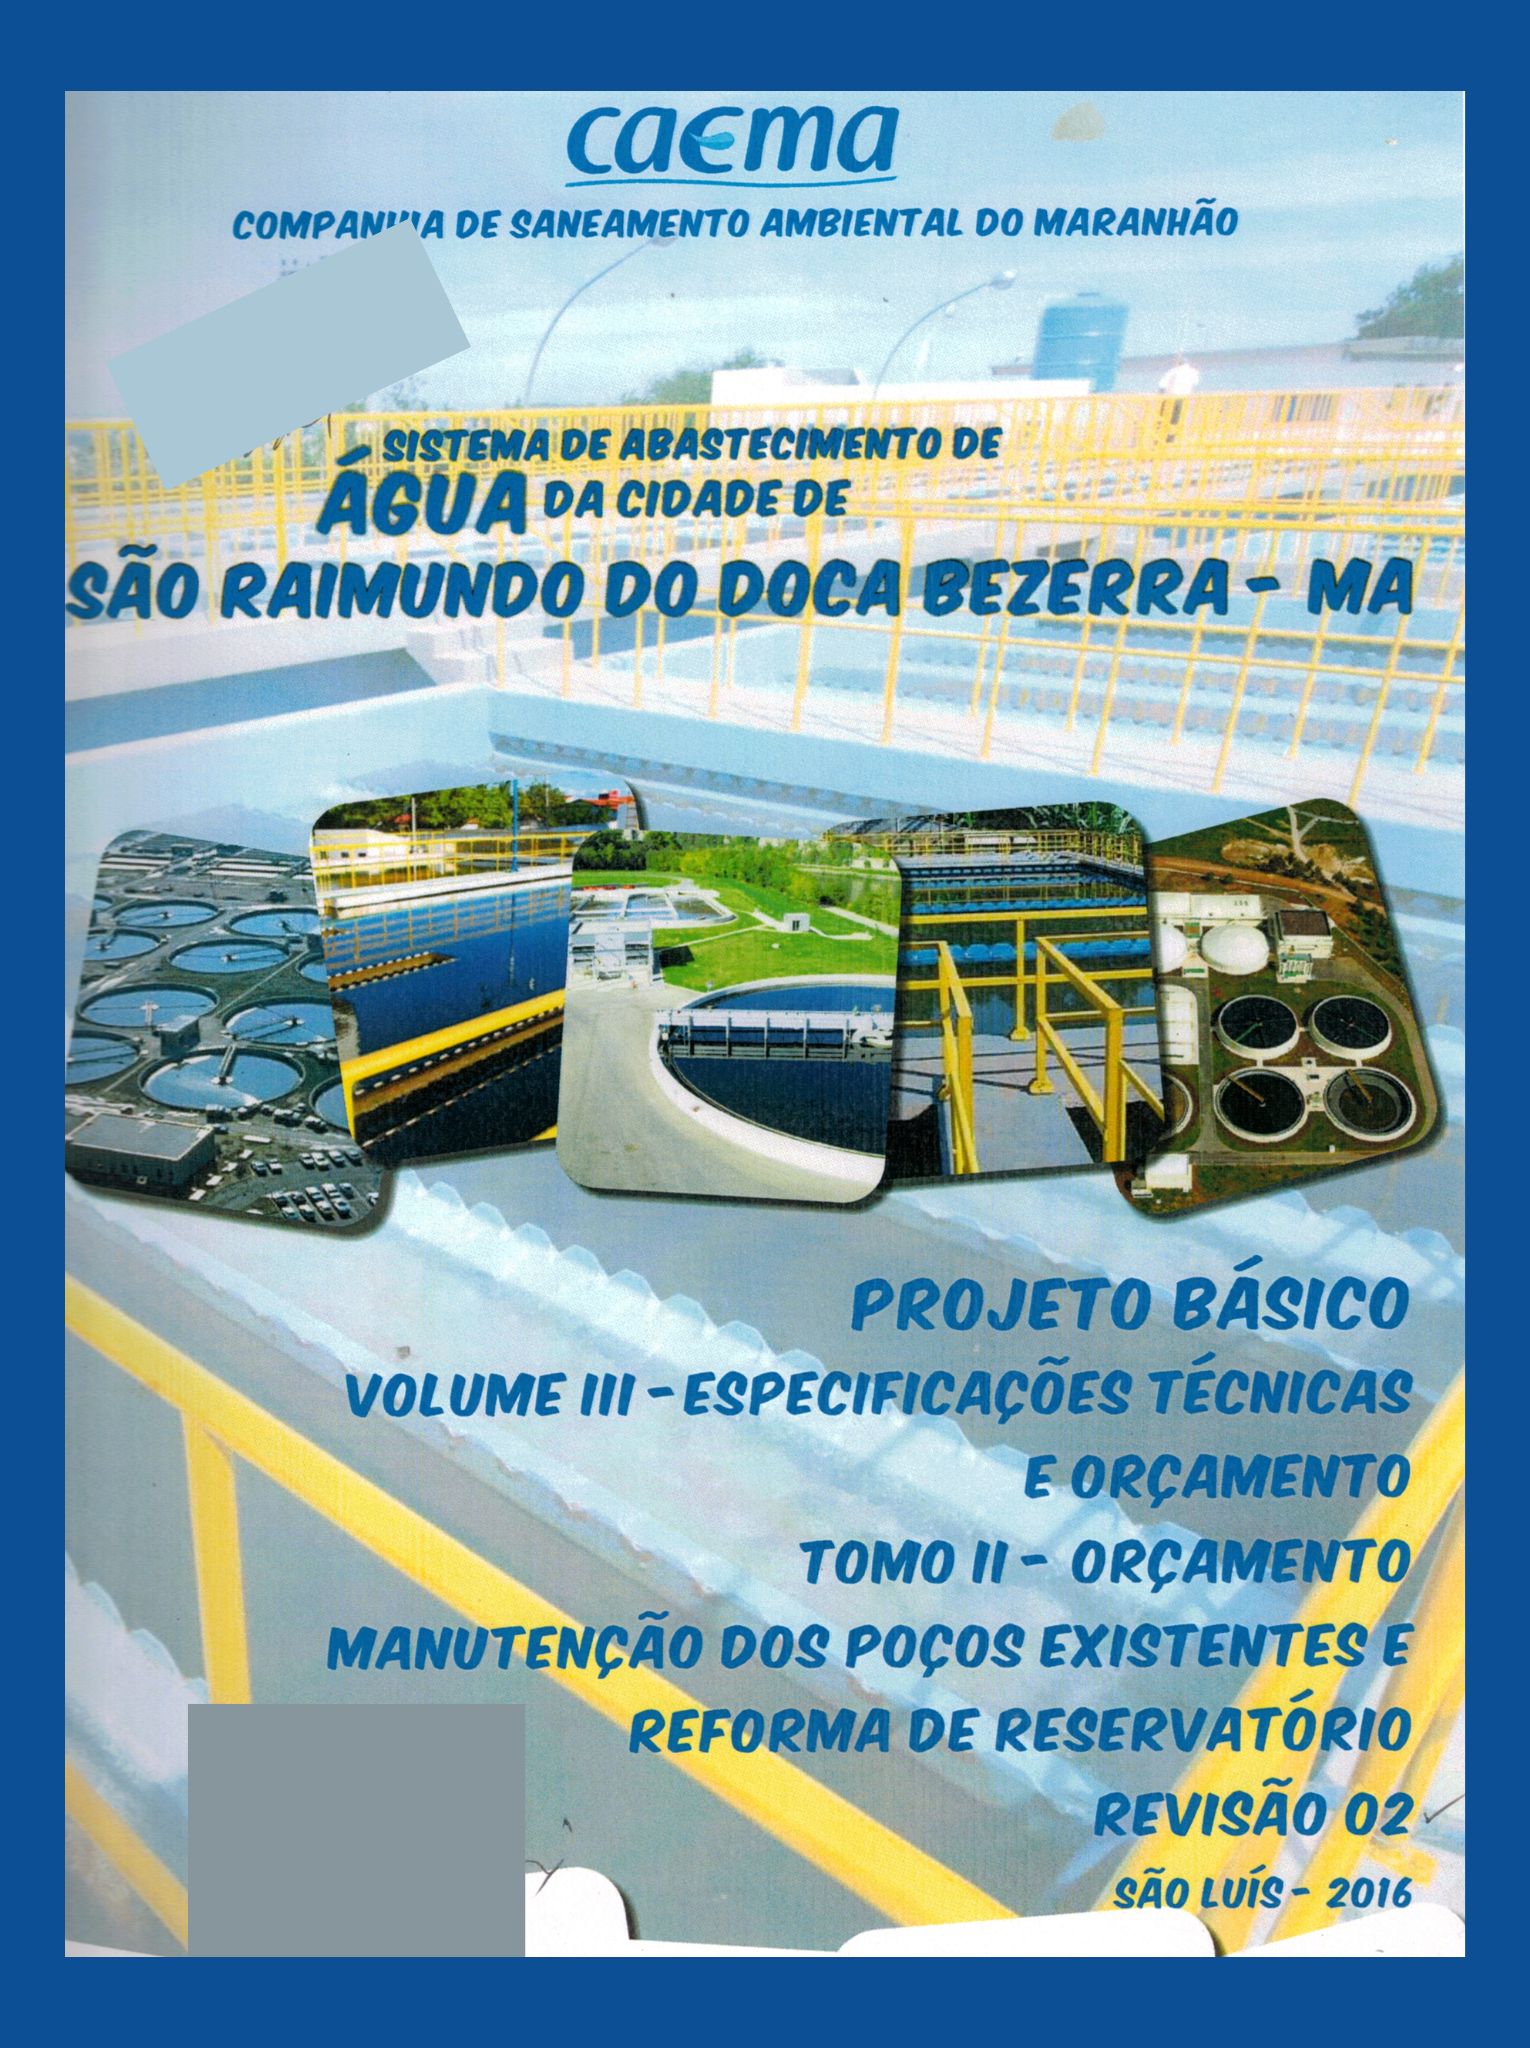 Imagem da capa do Projeto Técnico com informações sobre título e autoria.